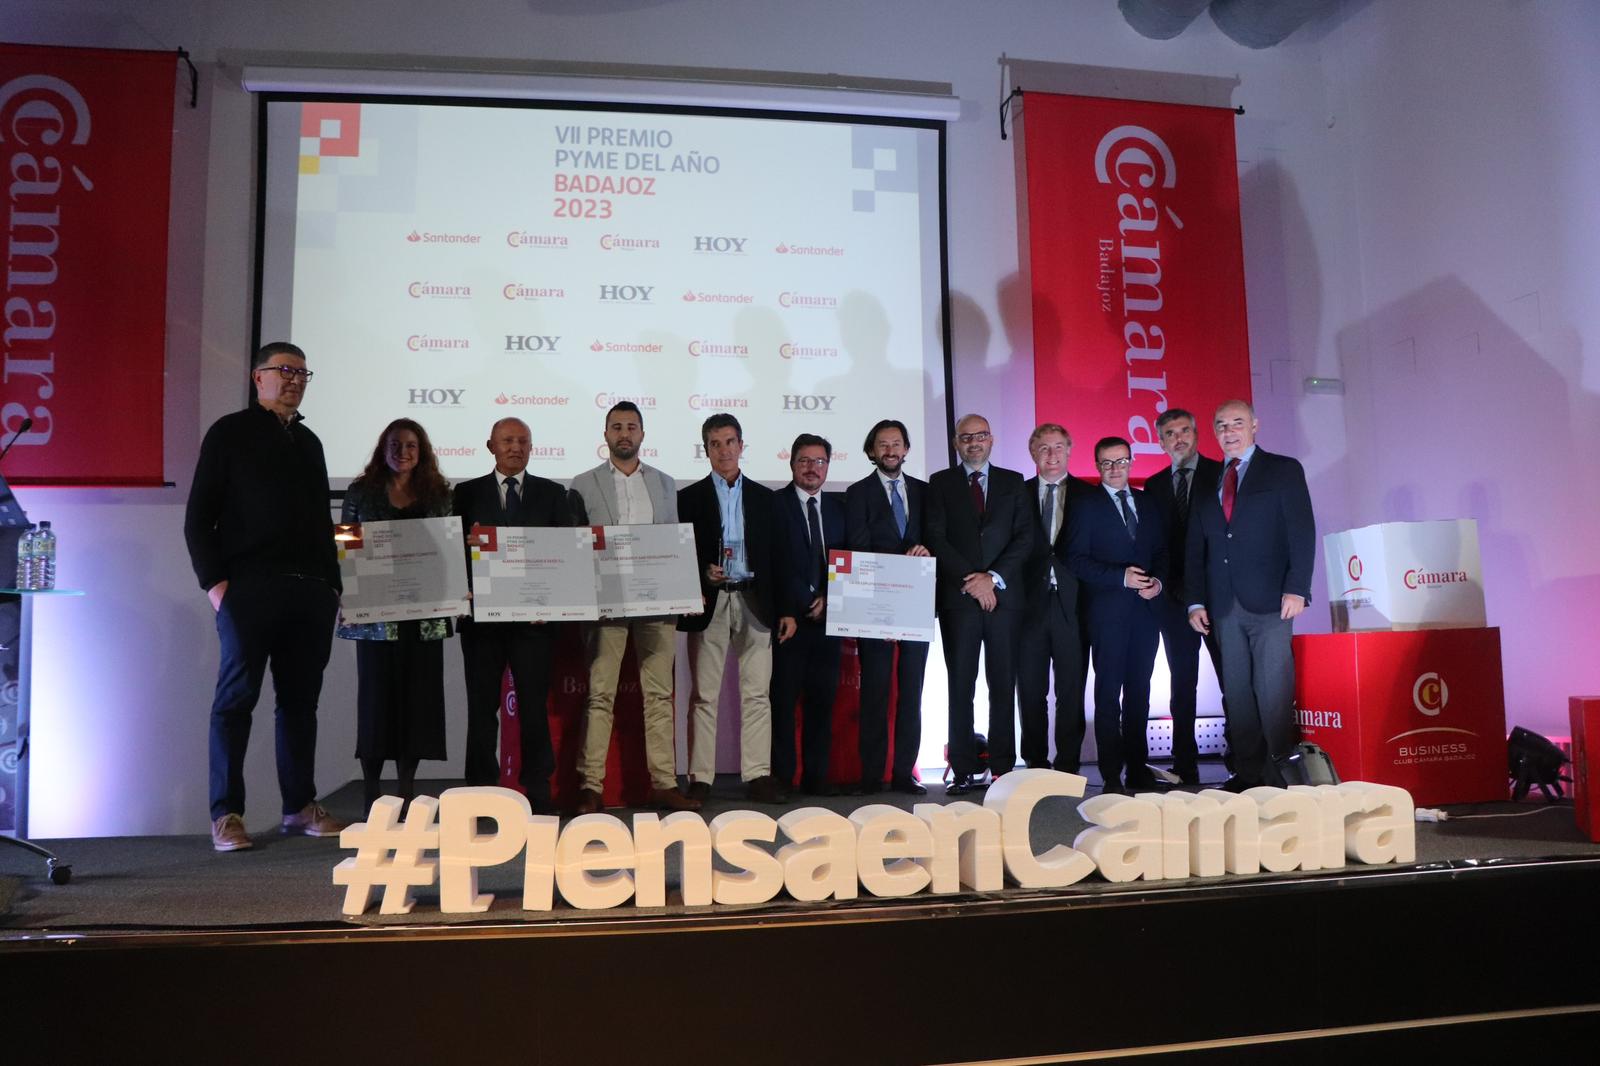 Image 0 of article Santamaría apuesta por el valor de las pequeñas y medianas empresas con motivo de la entrega Premio Pyme del Año de la Cámara de Comercio